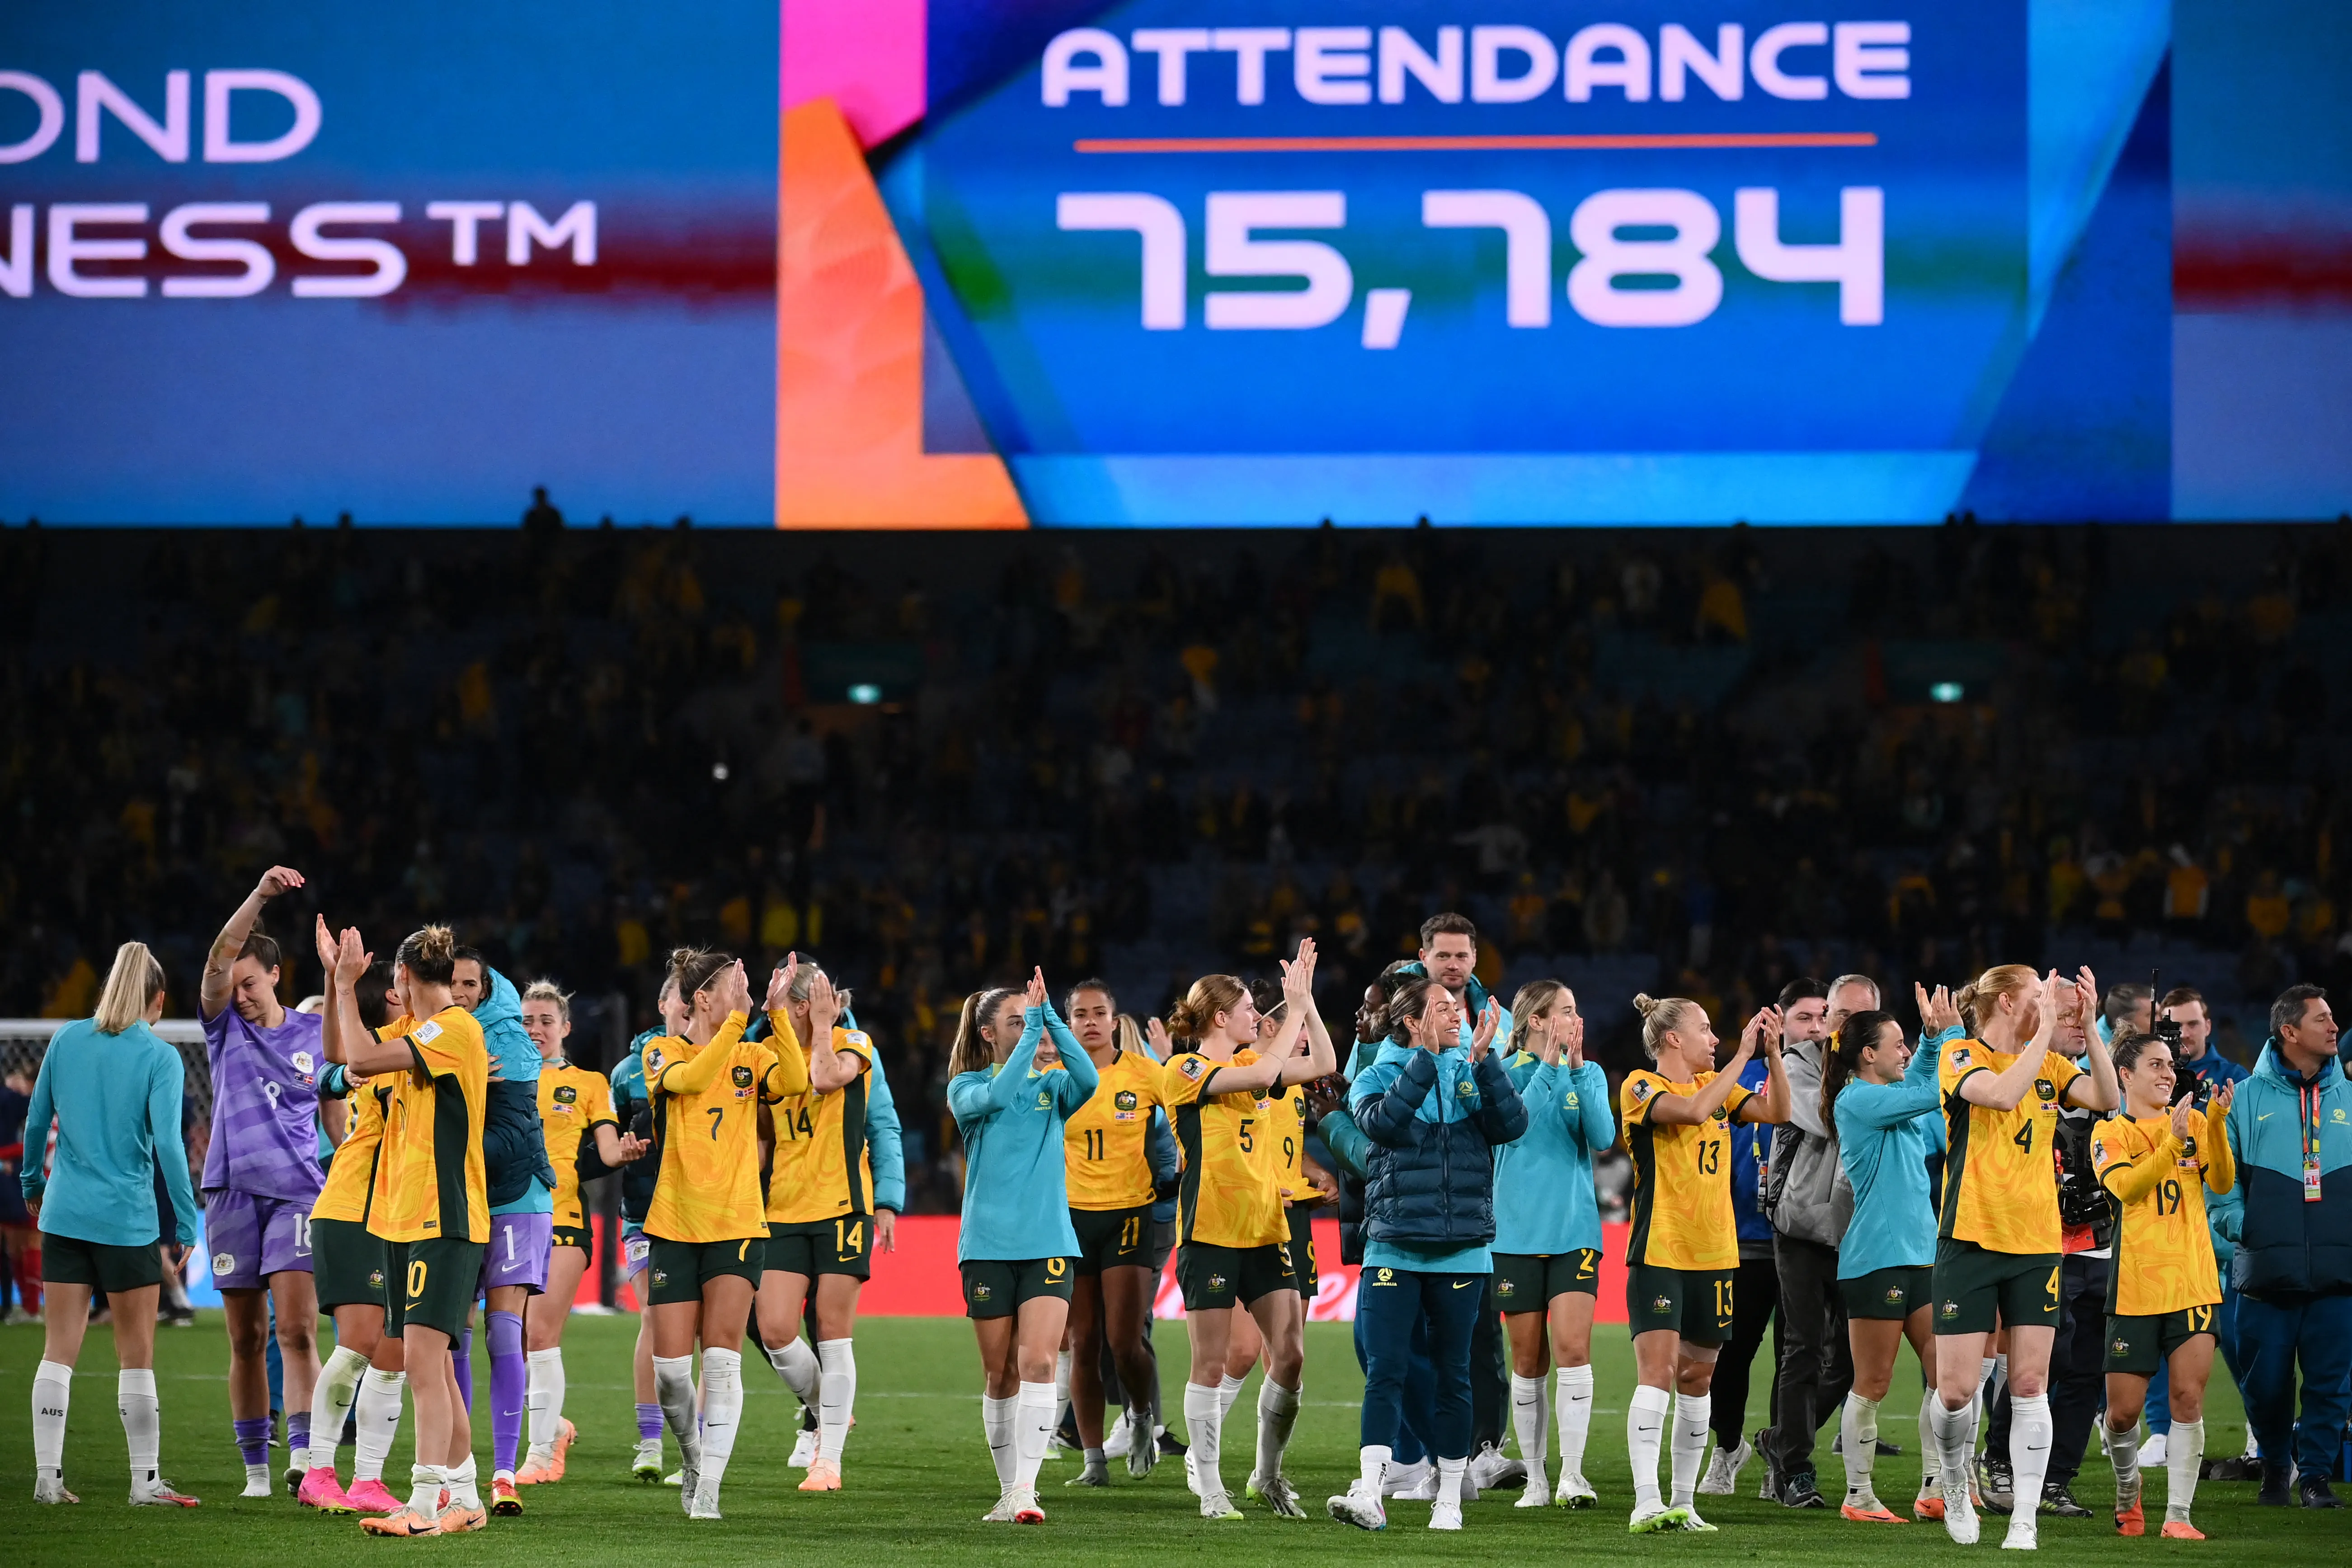 Austrália celebra vitória diante de 75 mil pessoas